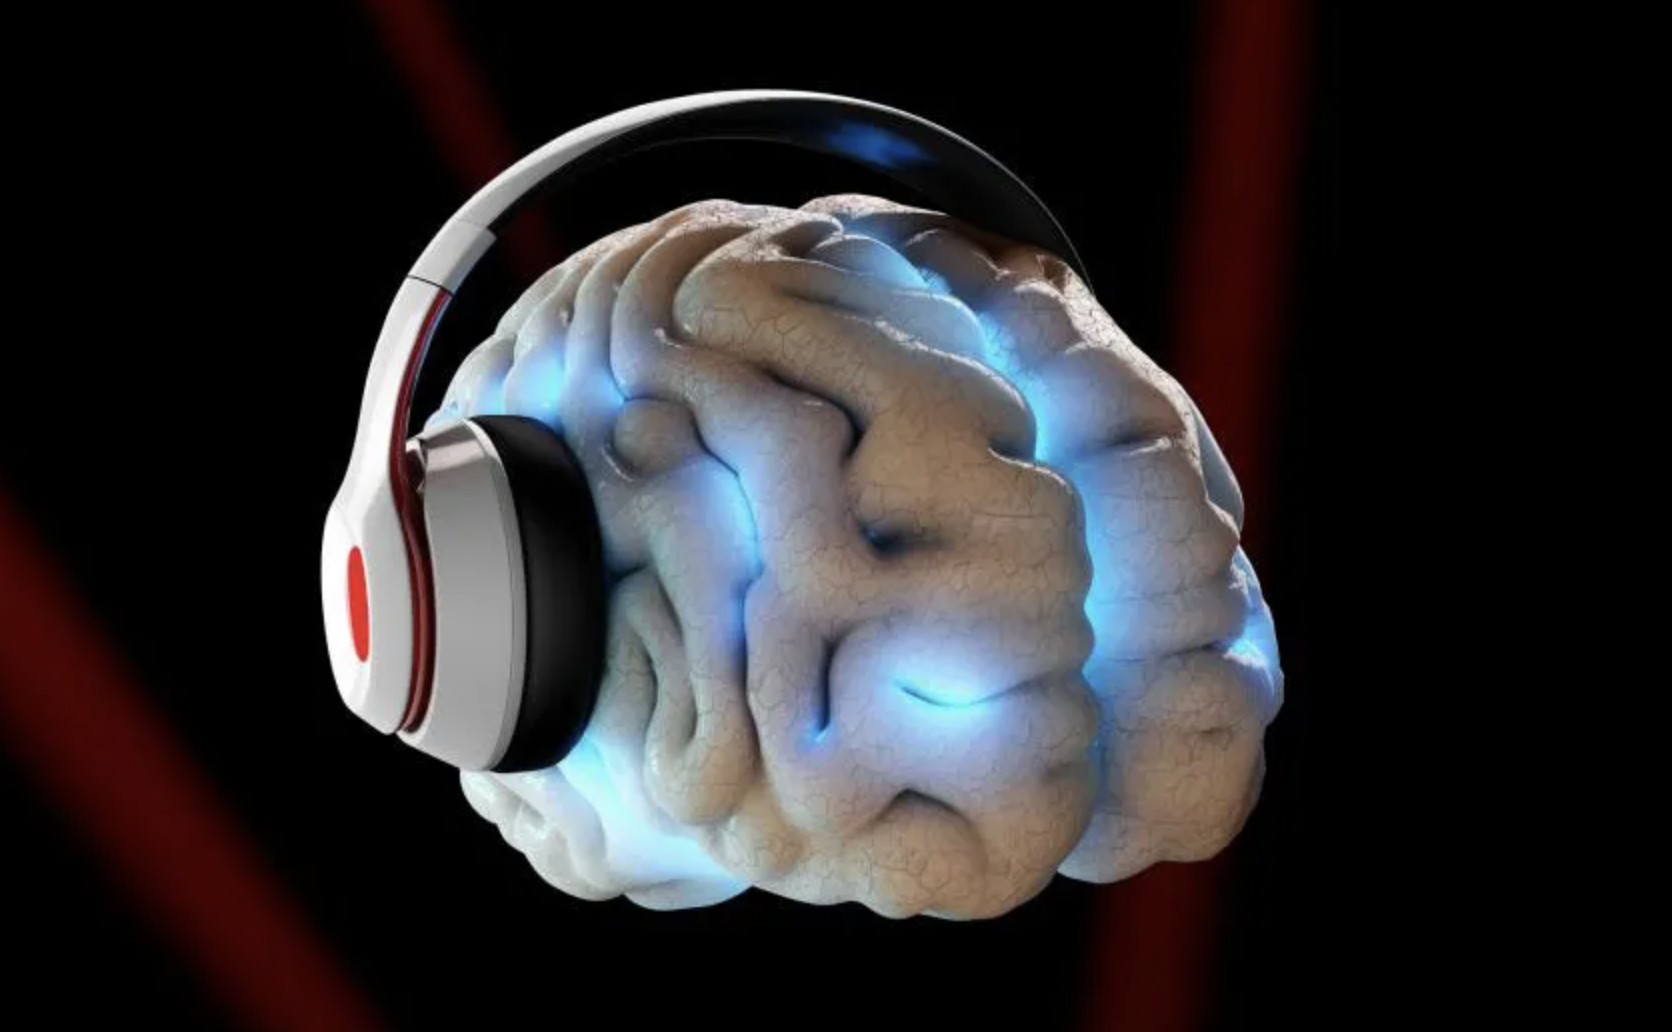 La evidencia científica en torno a los beneficios de la música en los tratamientos neurológicos sigue en aumento
(Foto: Getty Images)